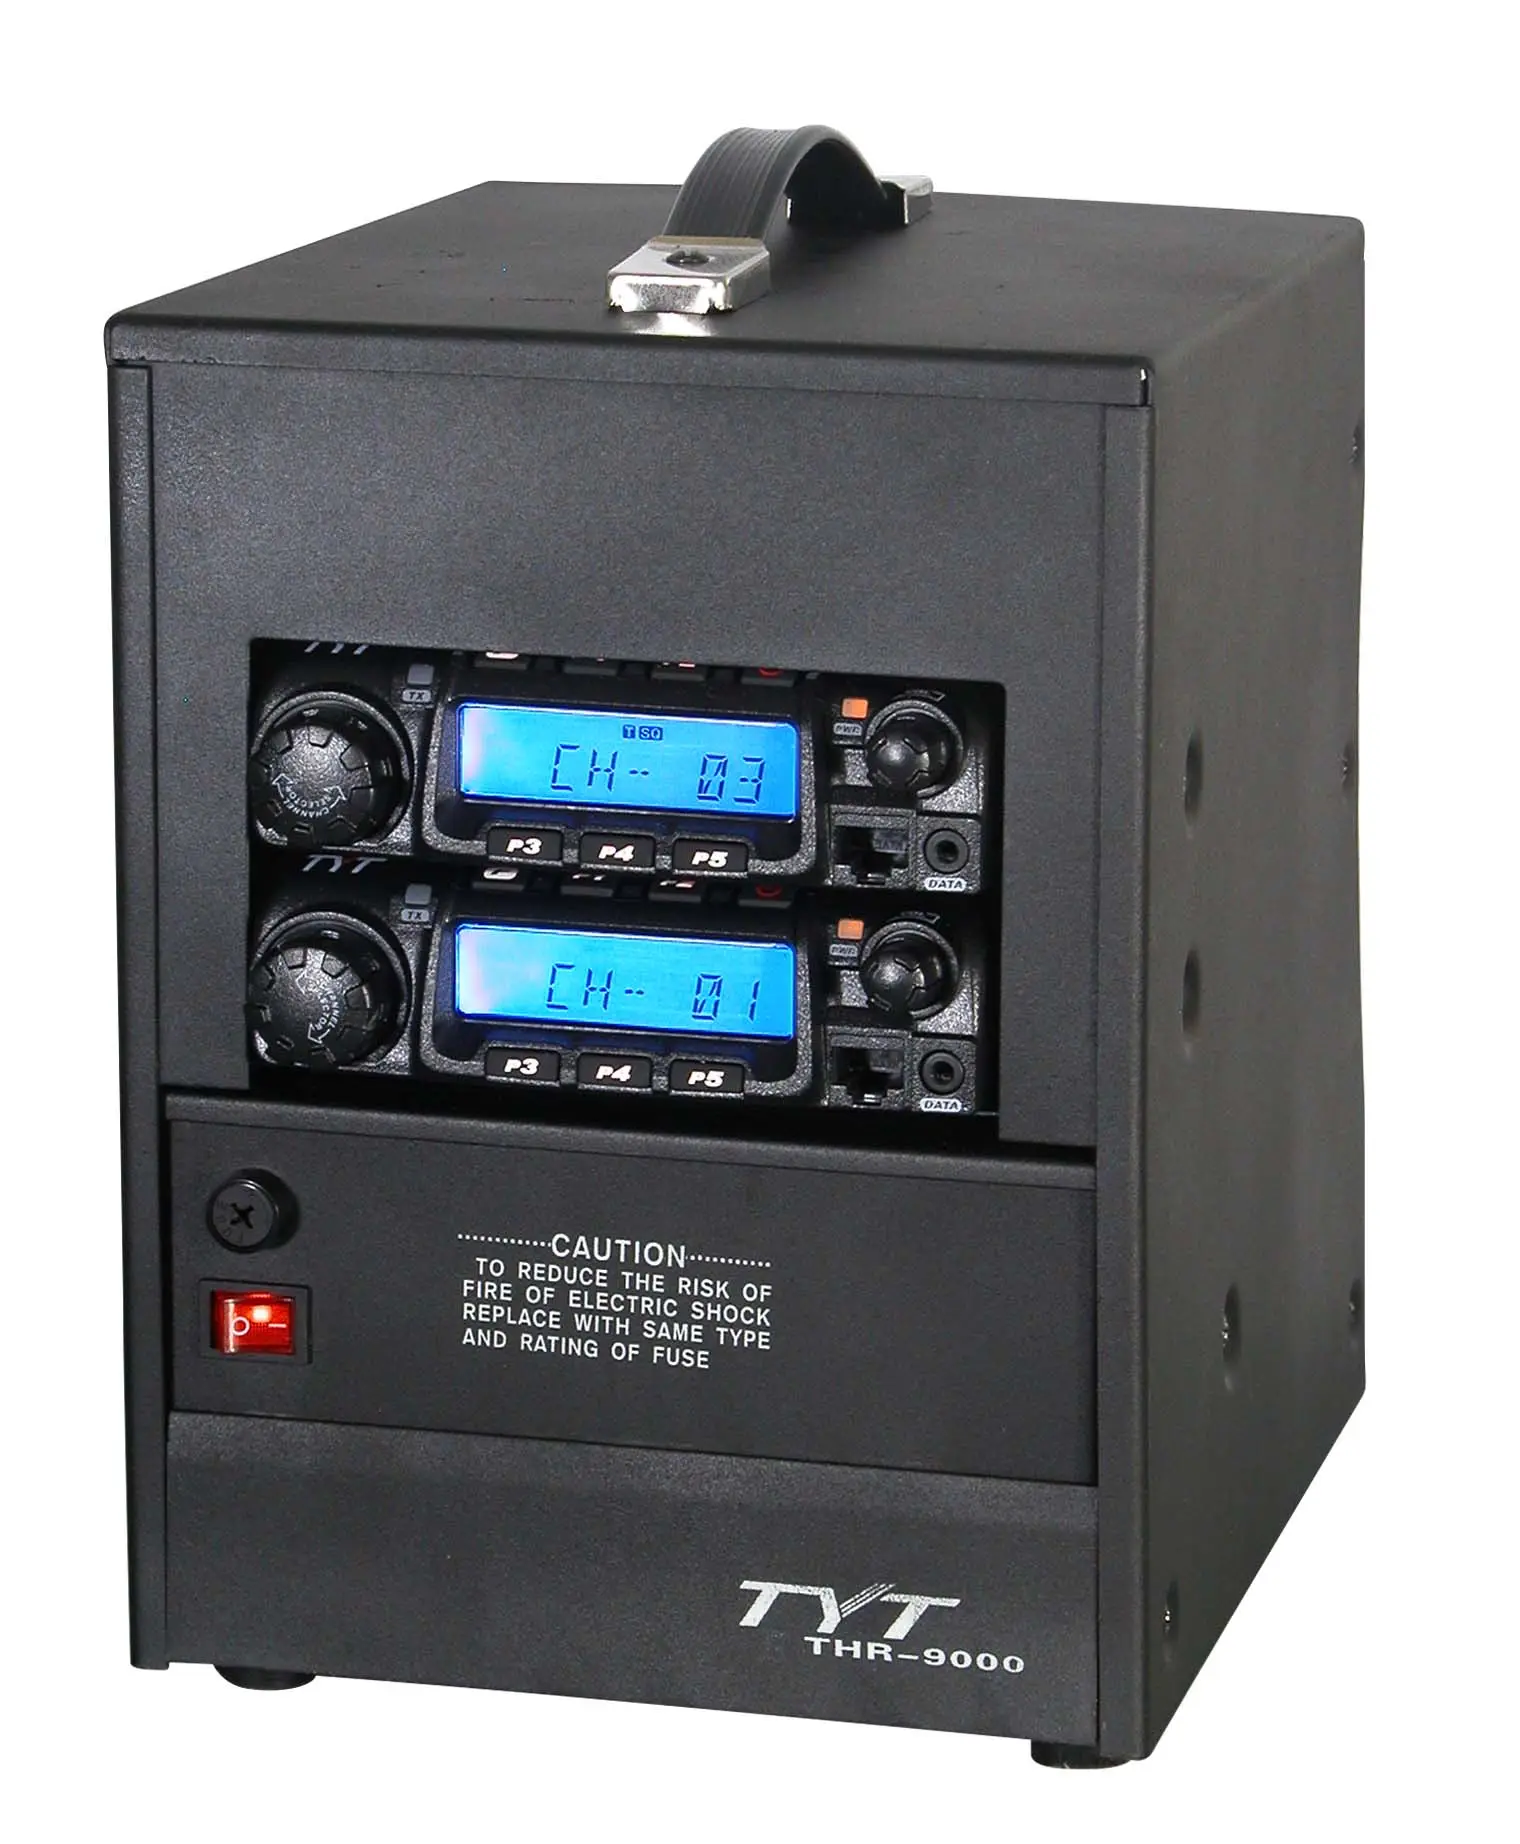 مُكرر لاسلكيّ VHF UHF متنقل بقوة 50 واط من TYT طراز رقم THR-9000 مُكرر لاسلكيّ مزود بموجات لاسلكية ثنائية الاتجاه مدمج وخفيف الوزن جهاز مُكرر لاسلكيّ THR 9000